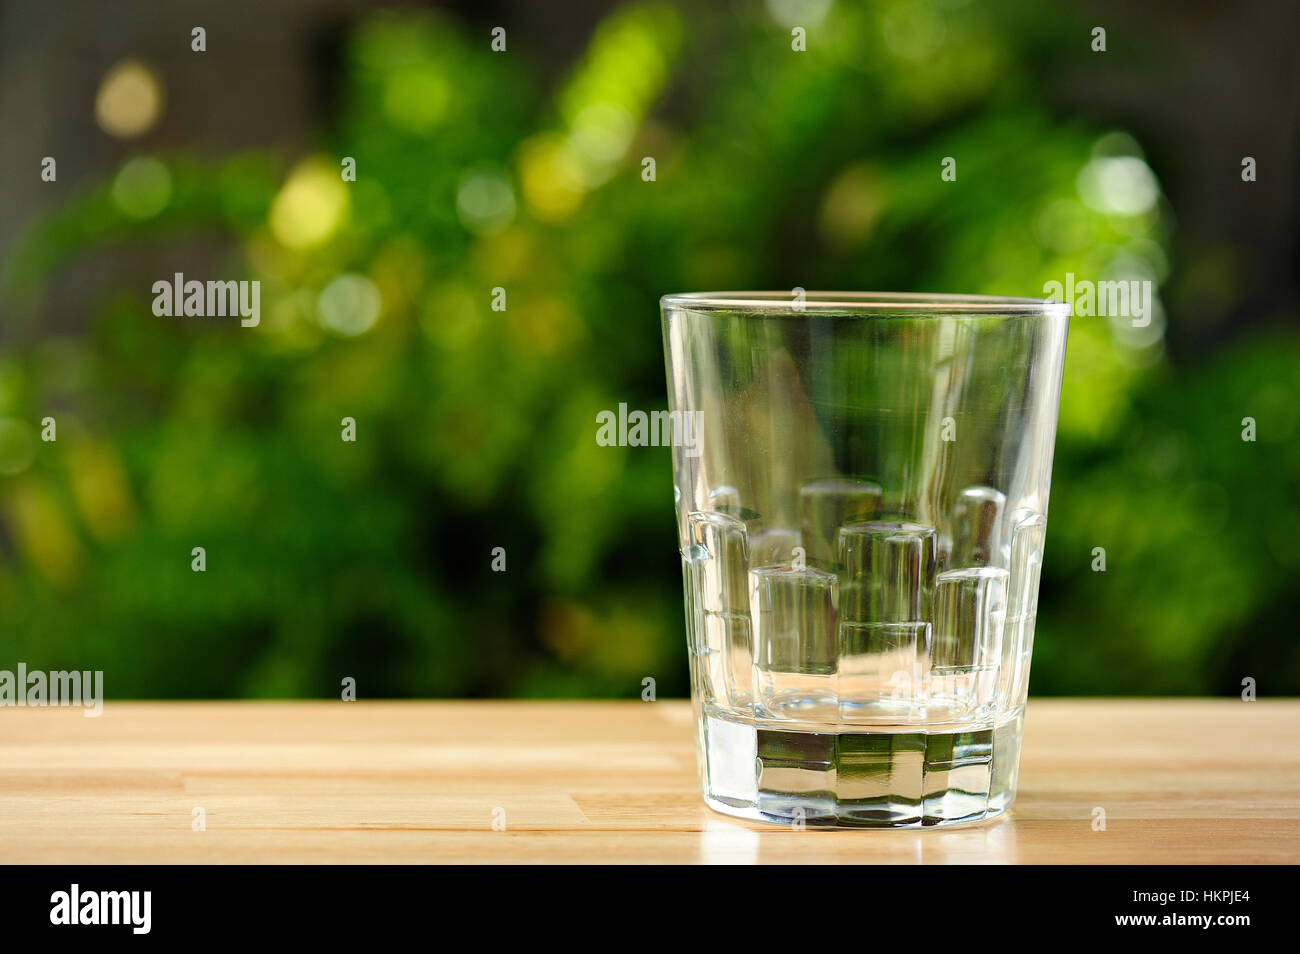 Bicchiere vuoto sul tavolo con giardino verde sullo sfondo Foto Stock